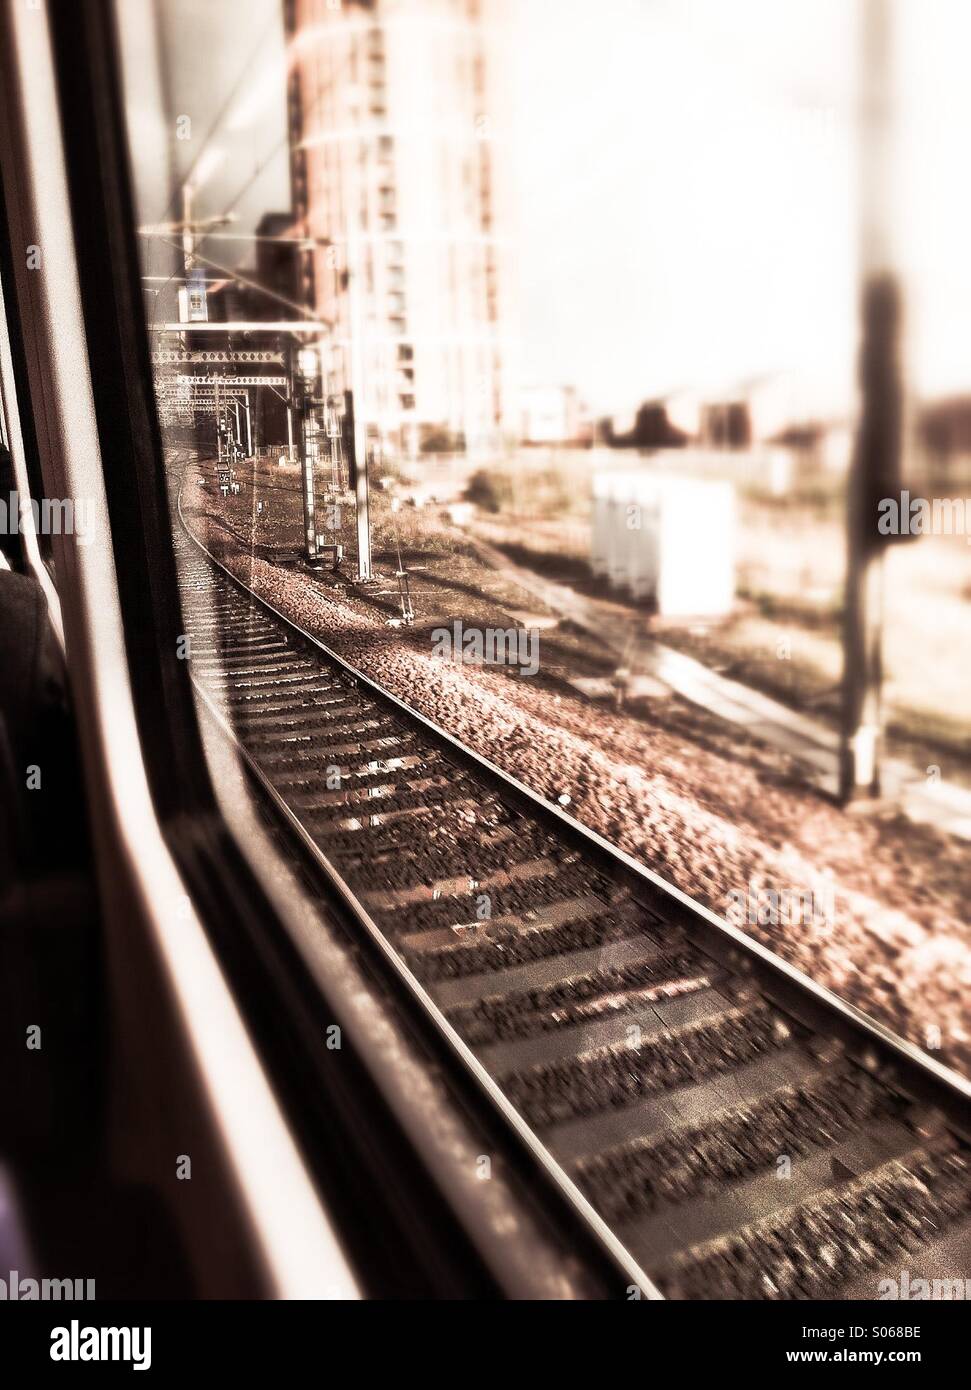 View from train window Stock Photo - Alamy